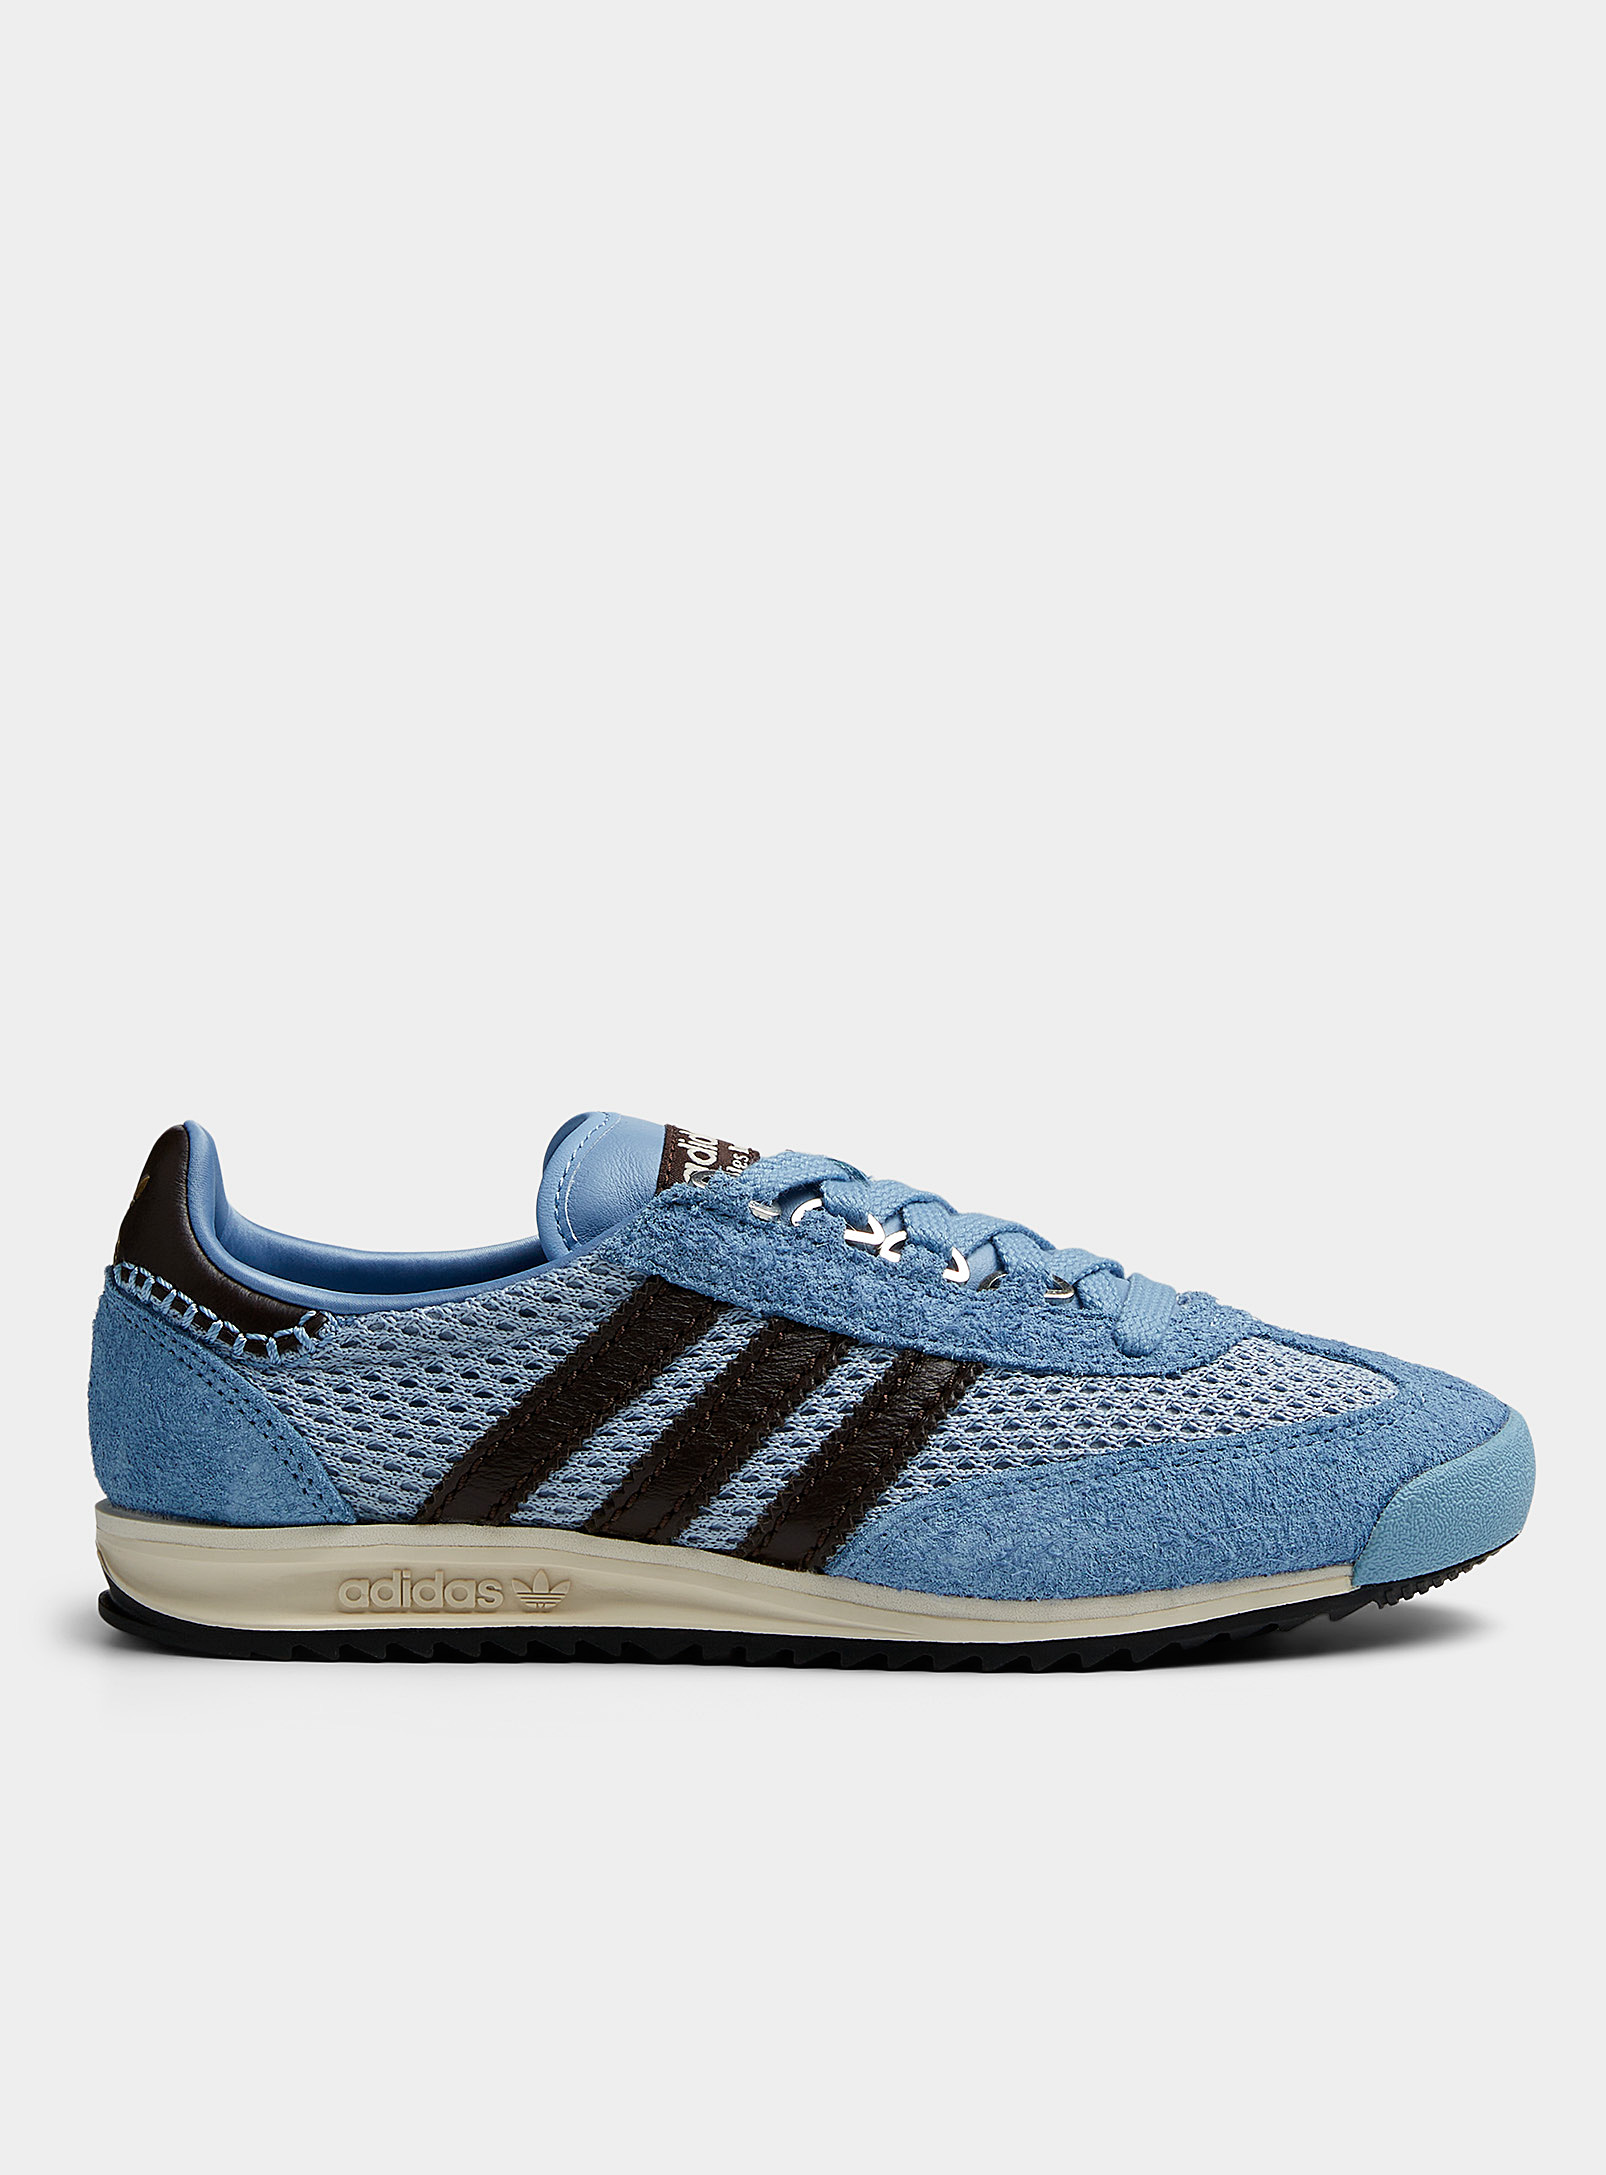 Shop Adidas X Wales Bonner Ash Blue Sl76 Sneakers Unisex